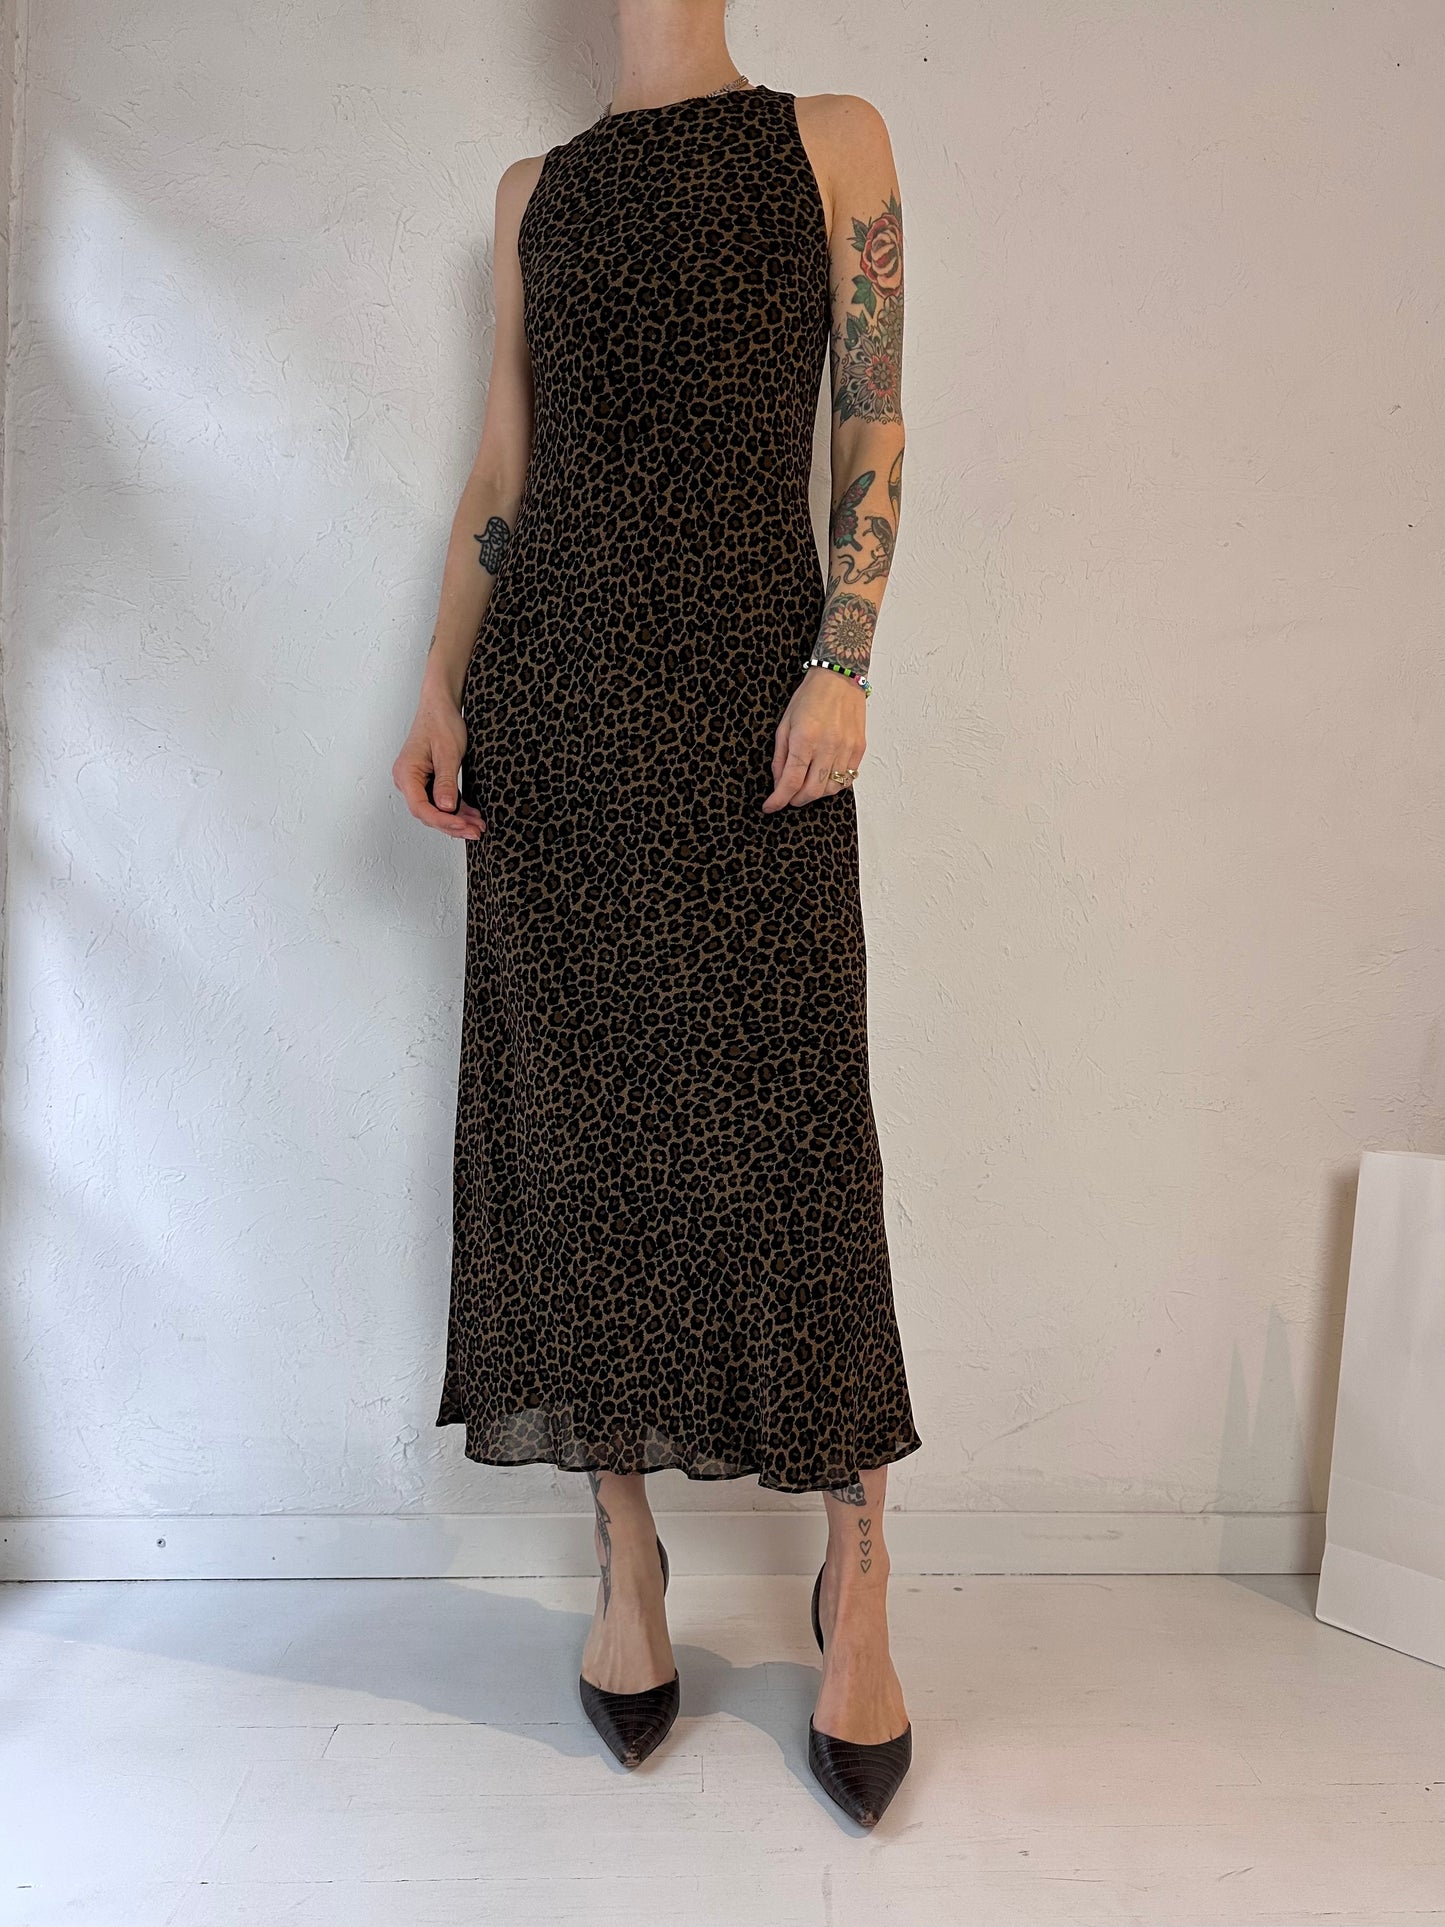 90s 'Jones Wear' Leopard Print Dress / Small - Medium